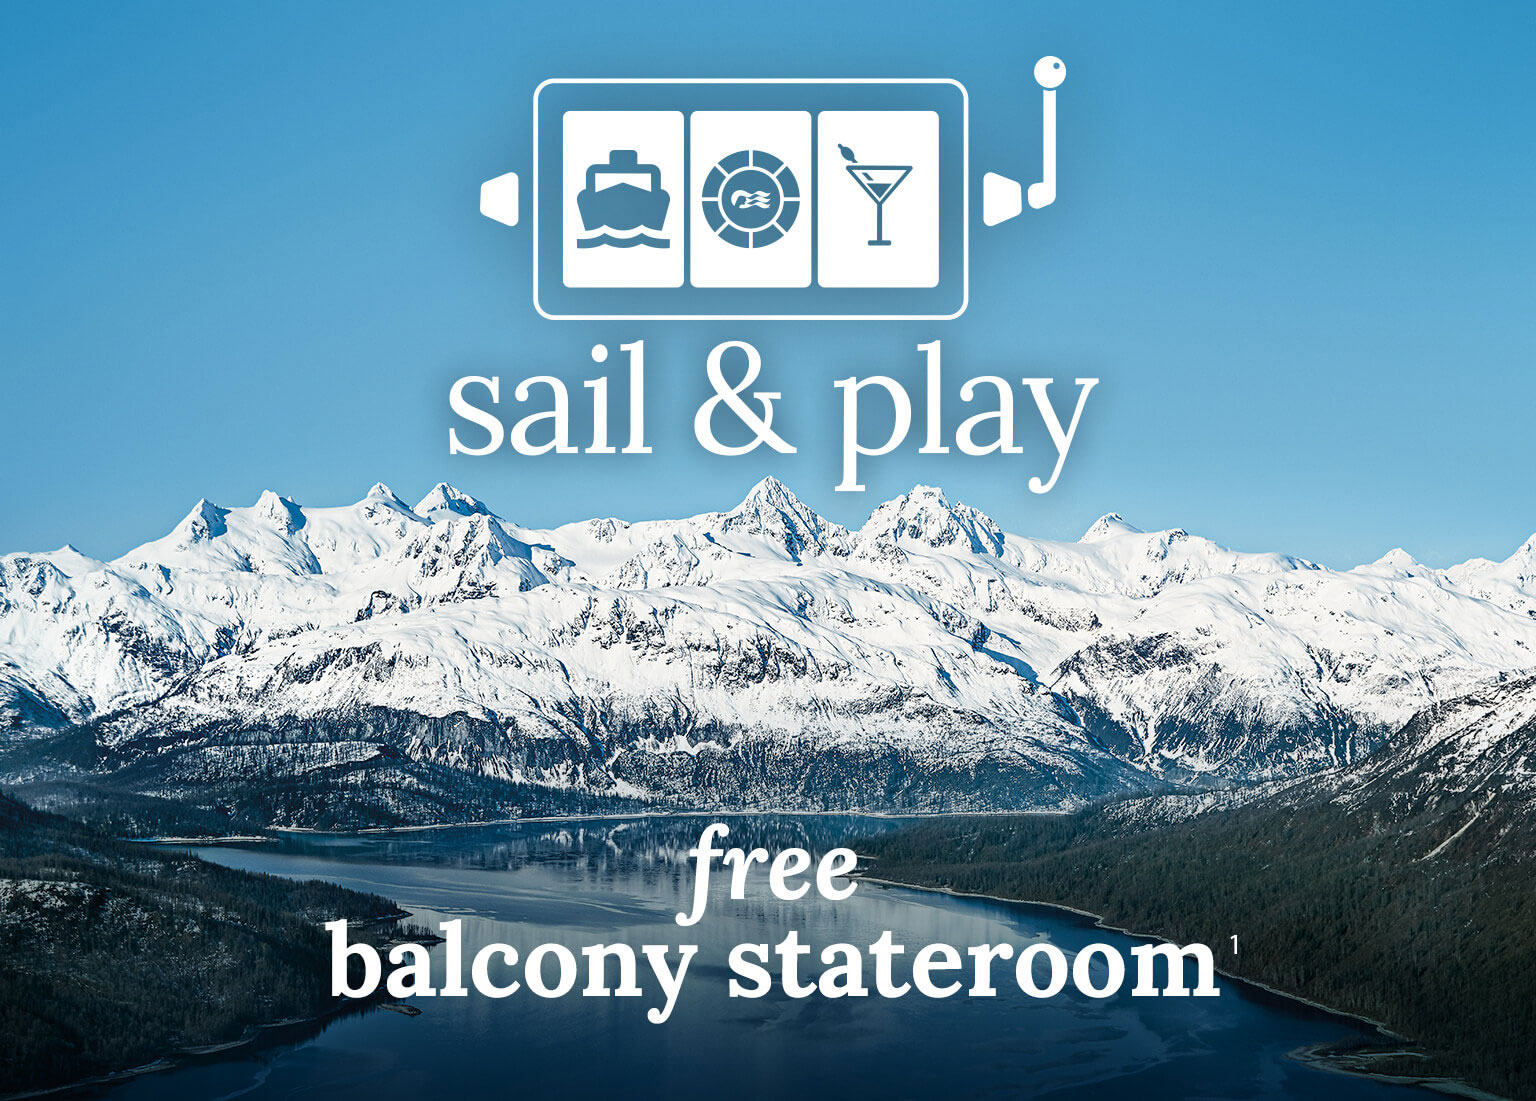 sail & play - free balcony stateroom